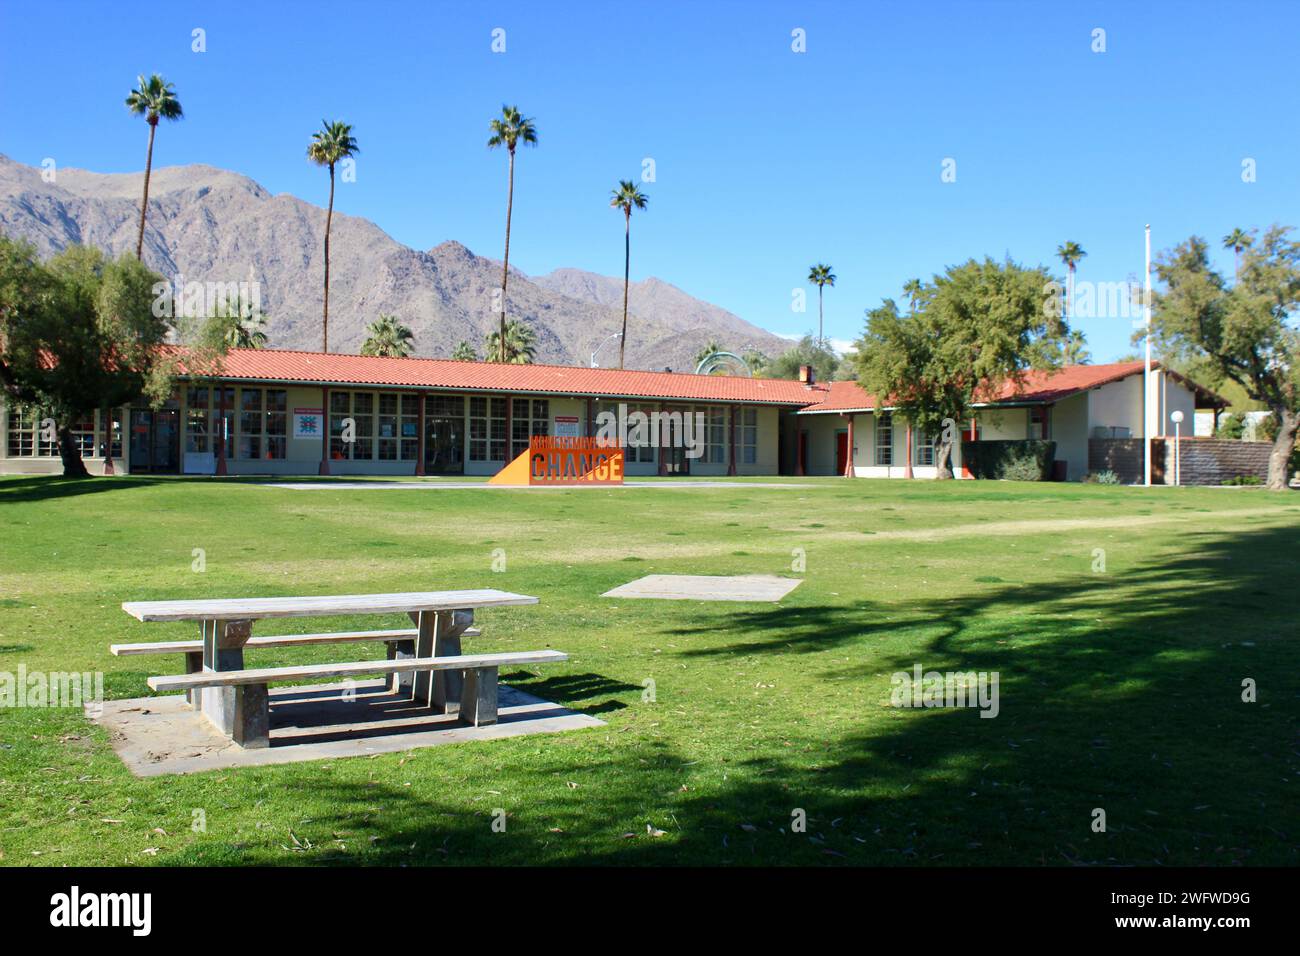 Desert Art Center, Palm Springs, Kalifornien Stockfoto